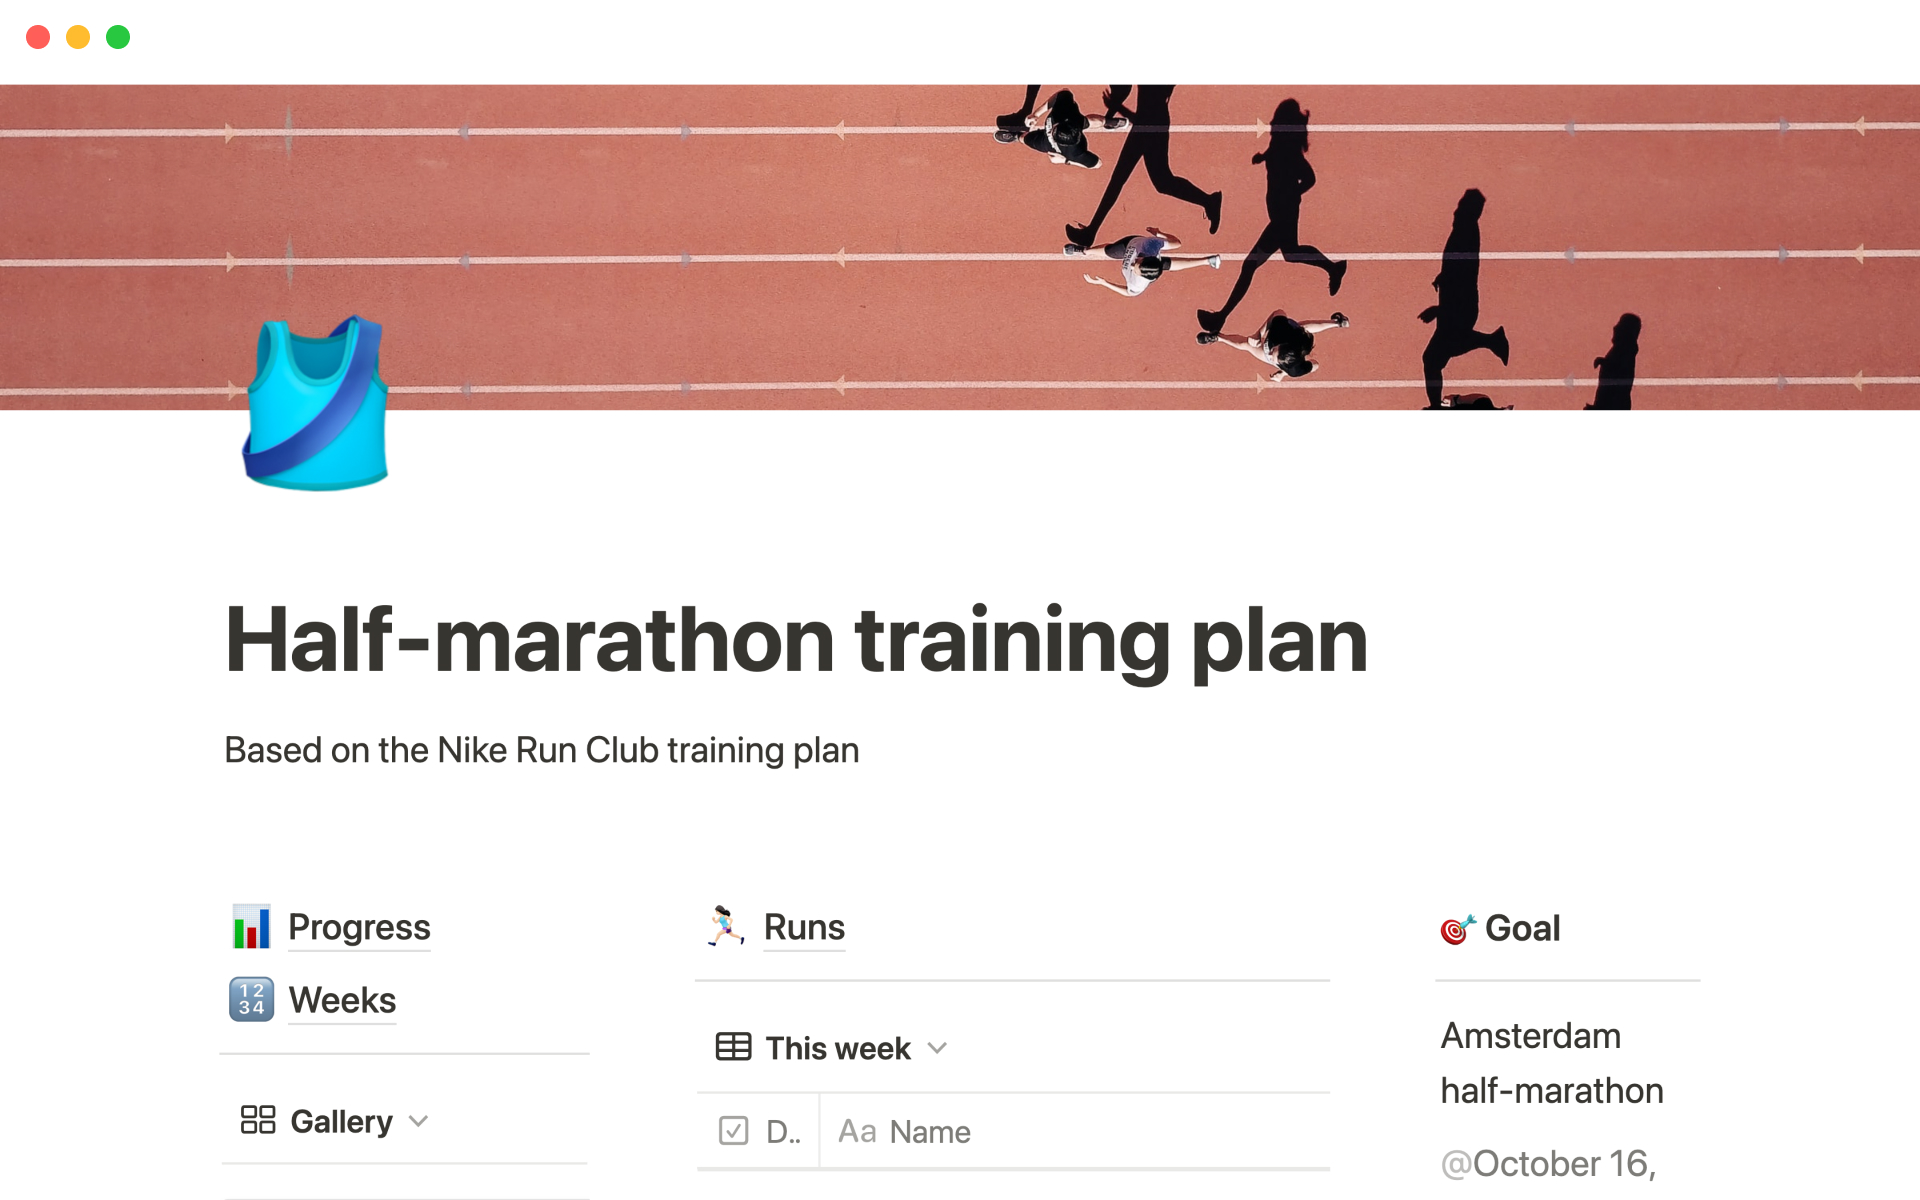 Aperçu du modèle de NRC half-marathon training plan